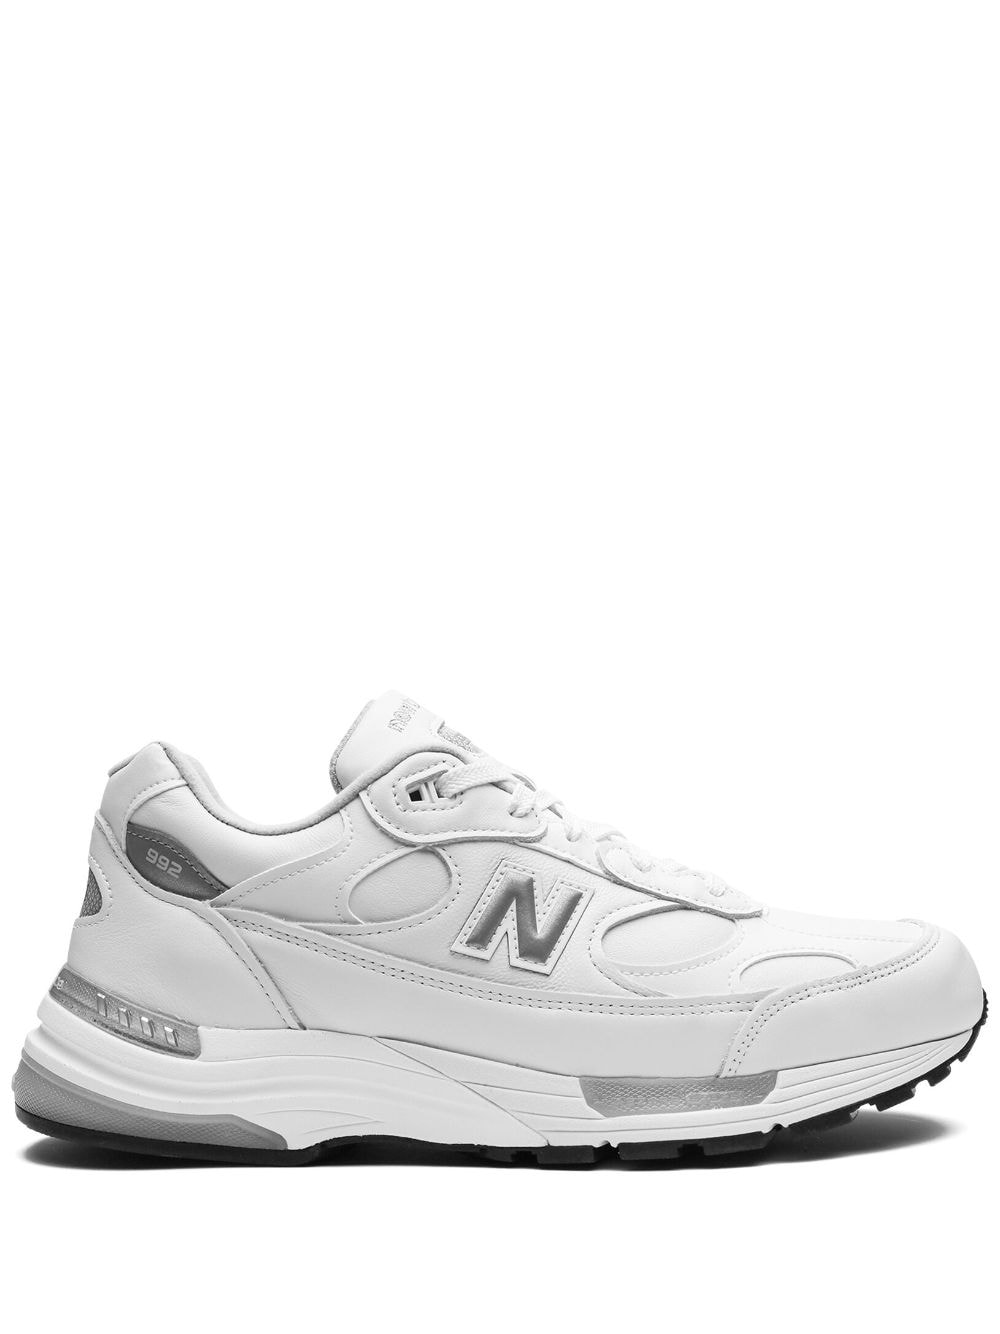 New Balance 992 Miusa White Silver 运动鞋 In White